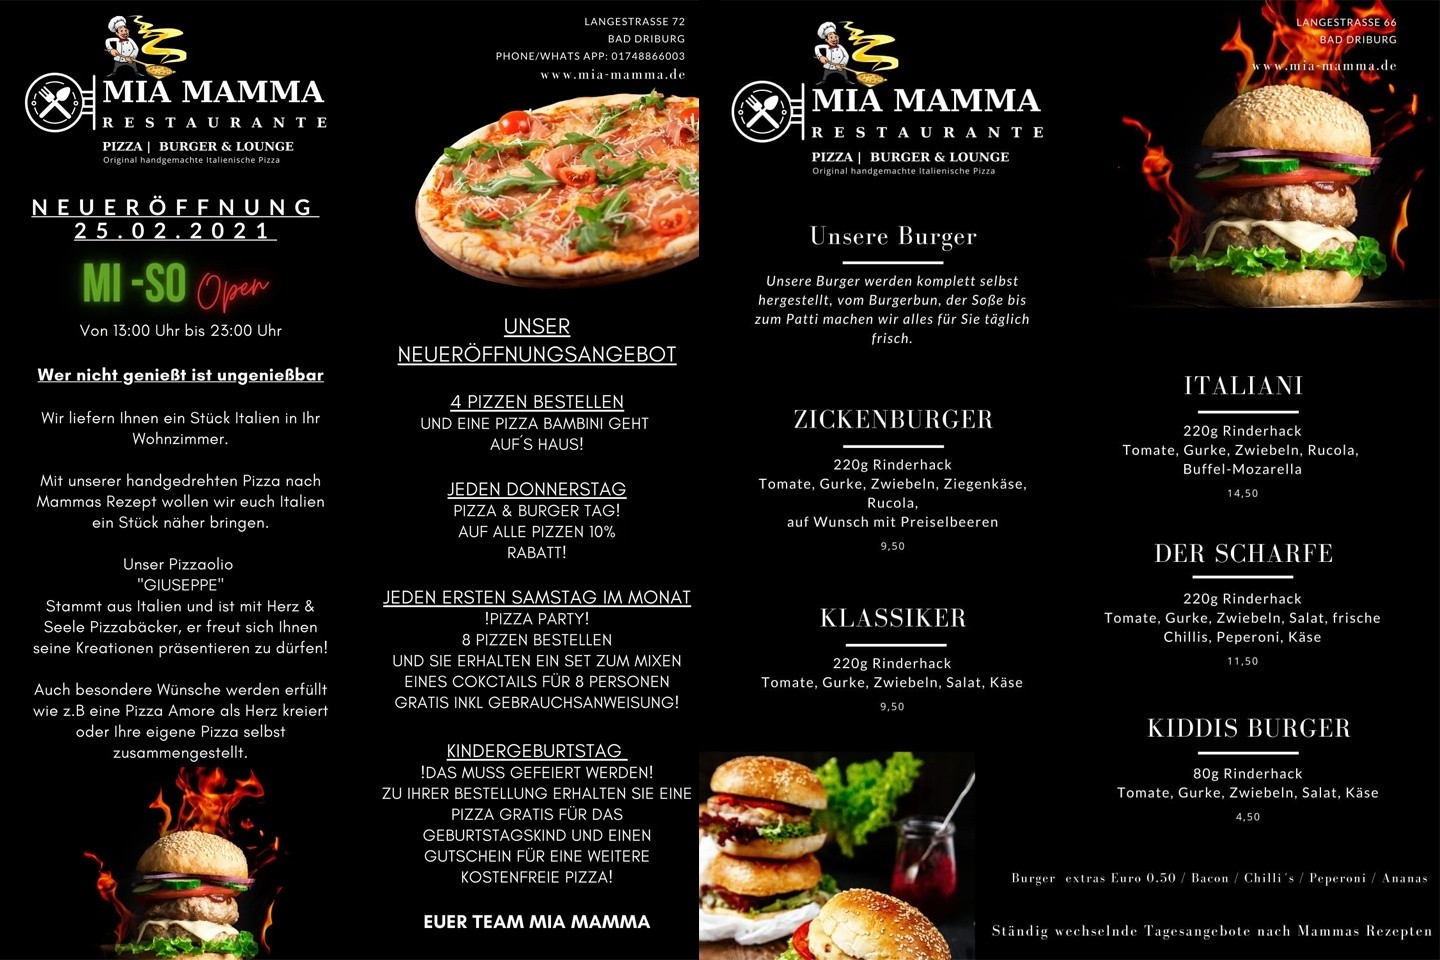 Neueröffnung Restaurante MIA MAMMA am 25.02.2021 - Pizza I Burger & Lounge